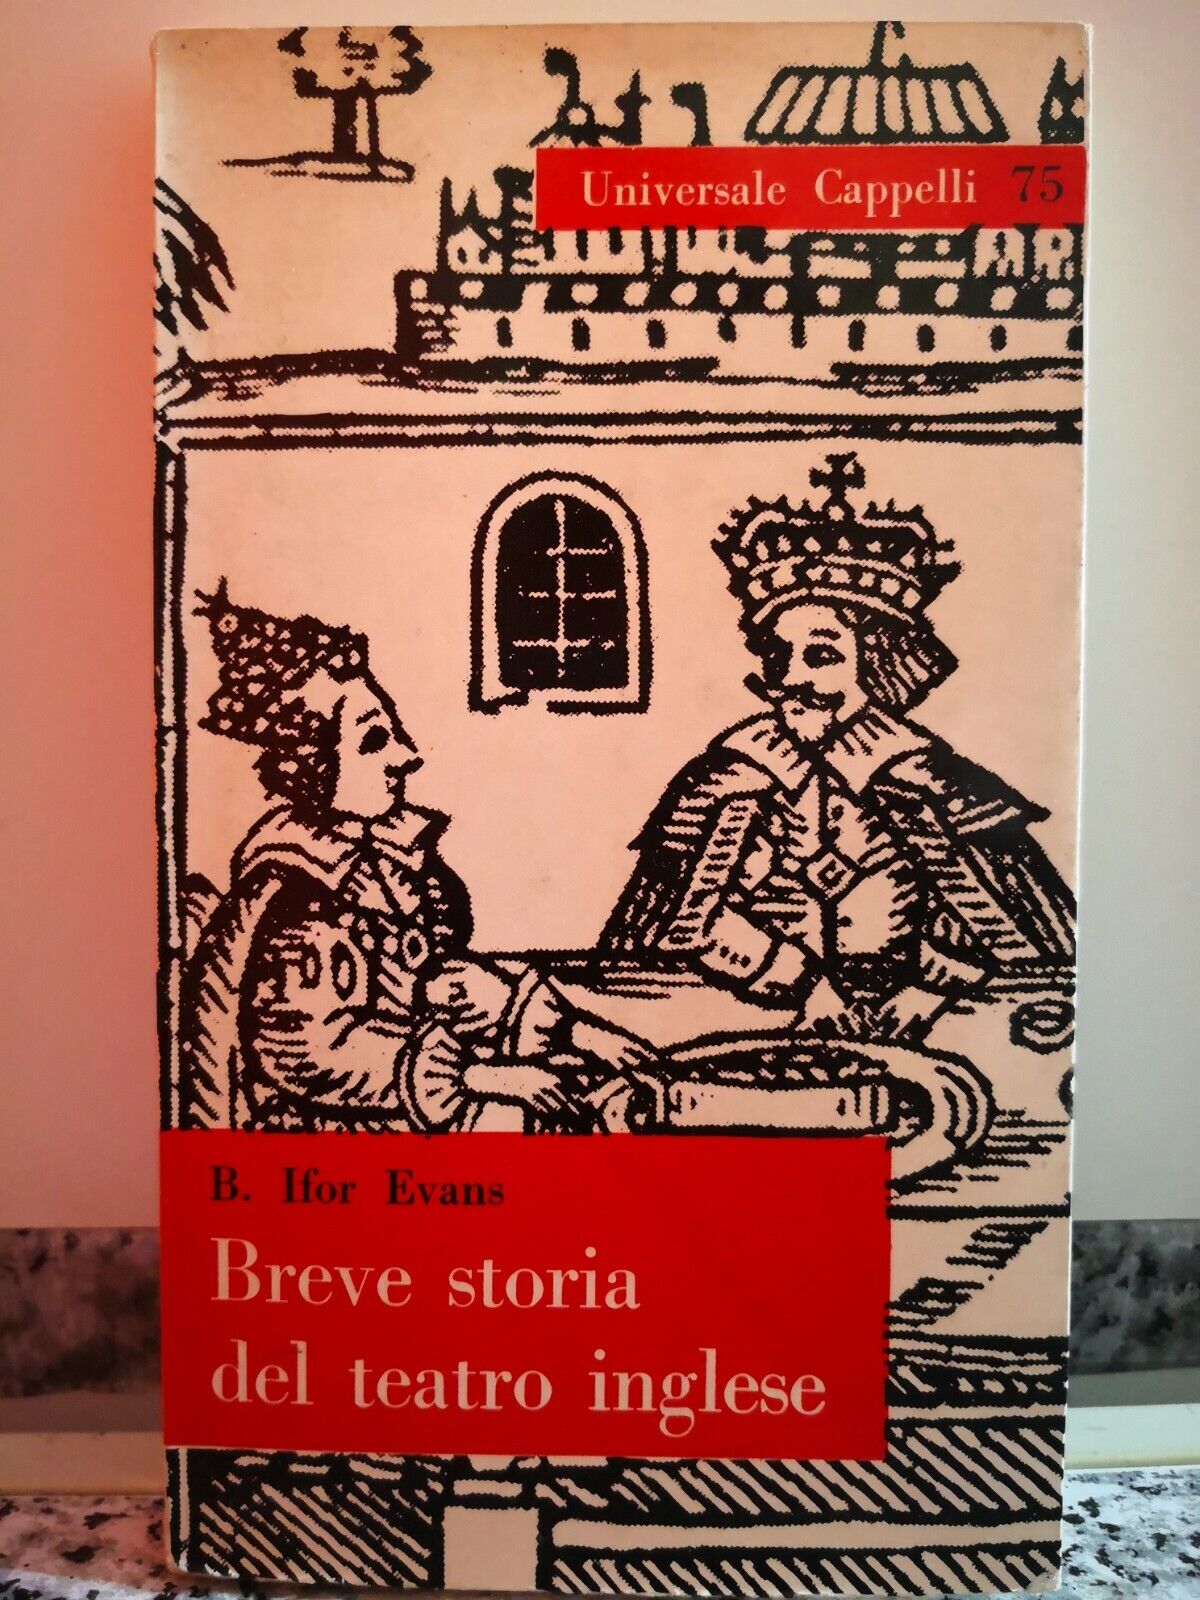  Breve storia del teatro inglese di B. Ifor Evans,  1963,  Cappelli Editore-F